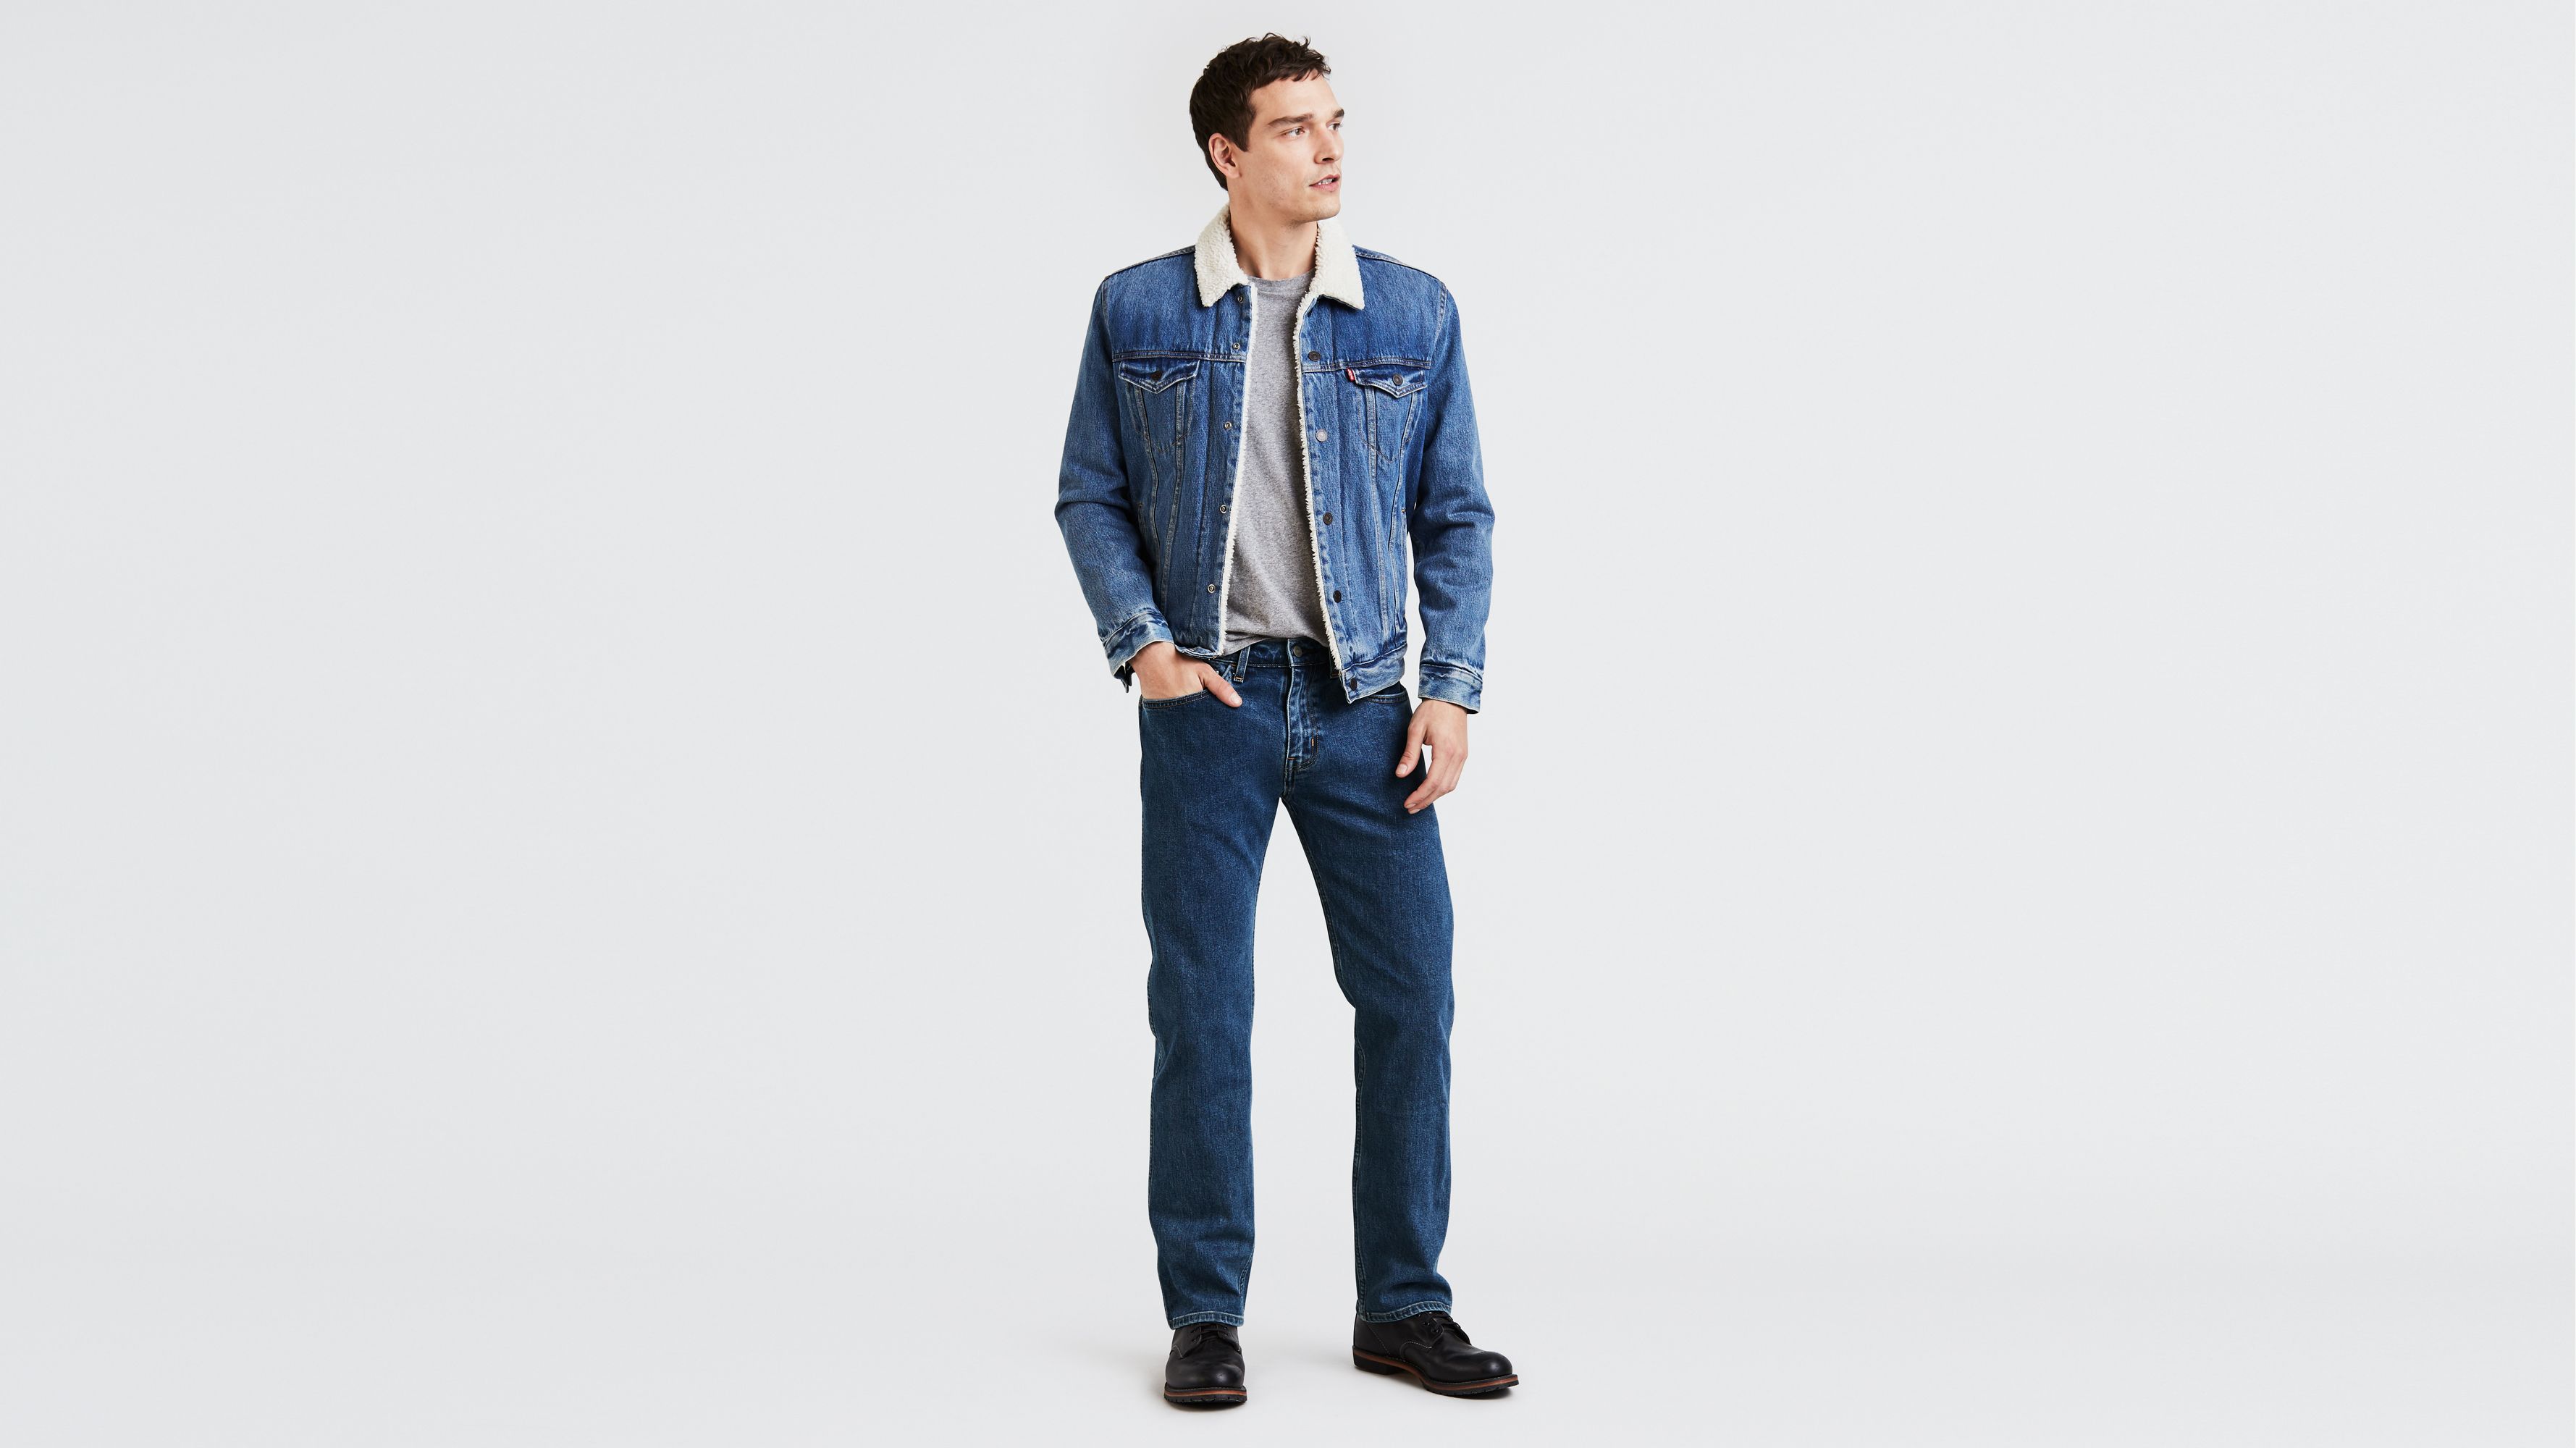 Levi's® 505 - Shop Levi's 505 Jeans for Men | Levi's® US